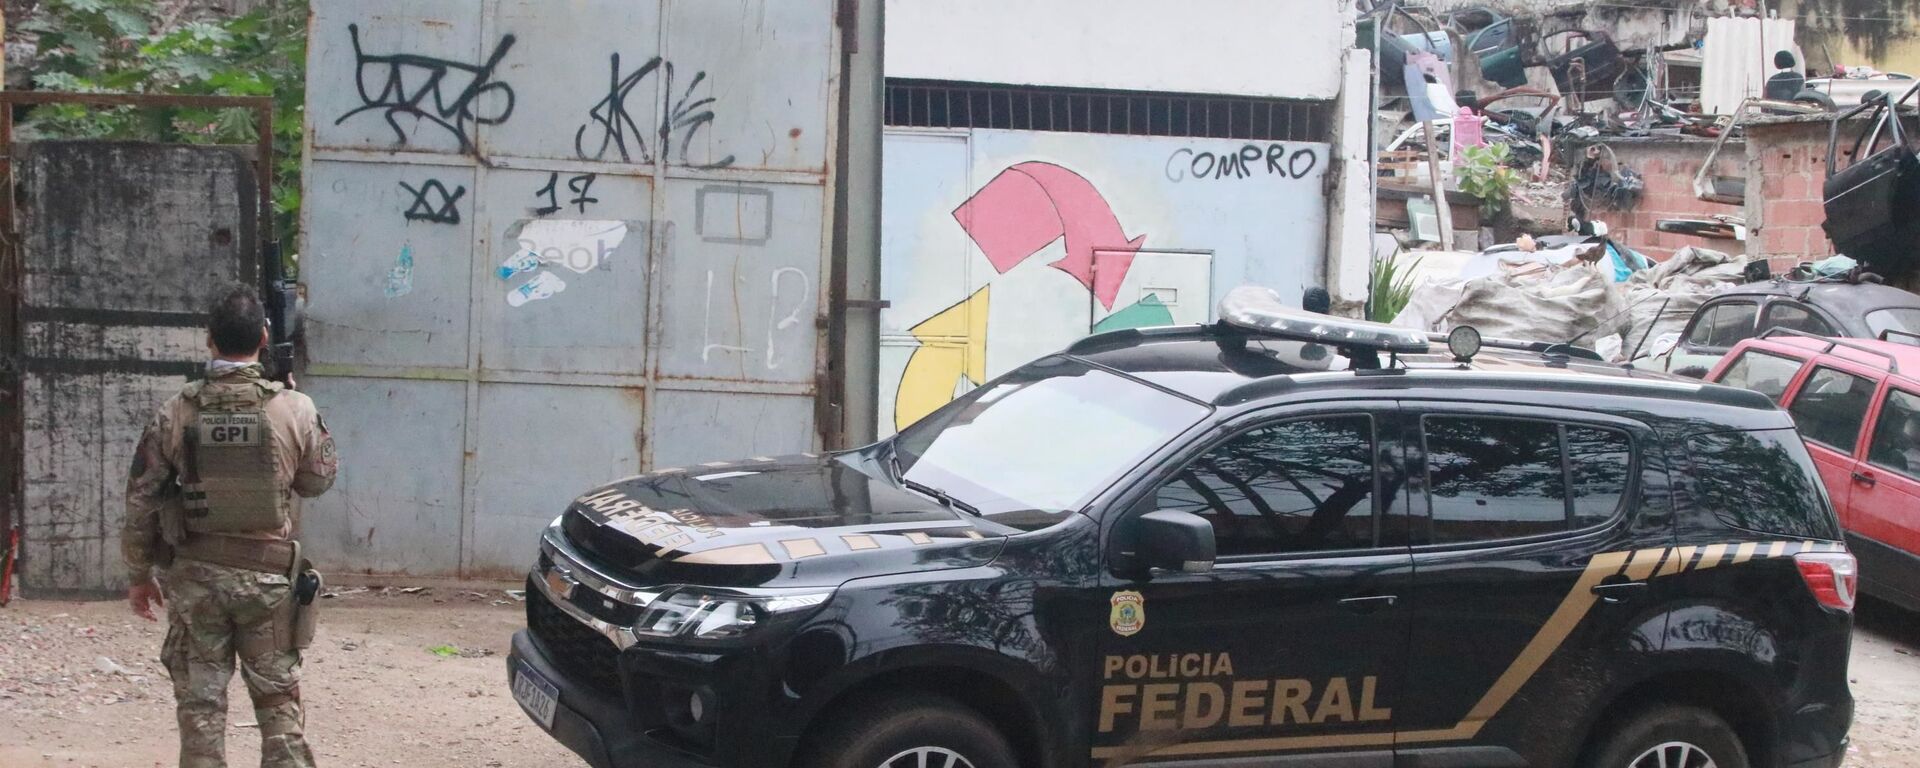  Policiais federais fizeram numa operação para cumprir mandado de prisão em uma comunidade no bairro do Sampaio, na Zona Norte do Rio de Janeiro (RJ). Os criminosos conseguiram fugir do local, 9 de agosto de 2021  - Sputnik Brasil, 1920, 20.10.2021